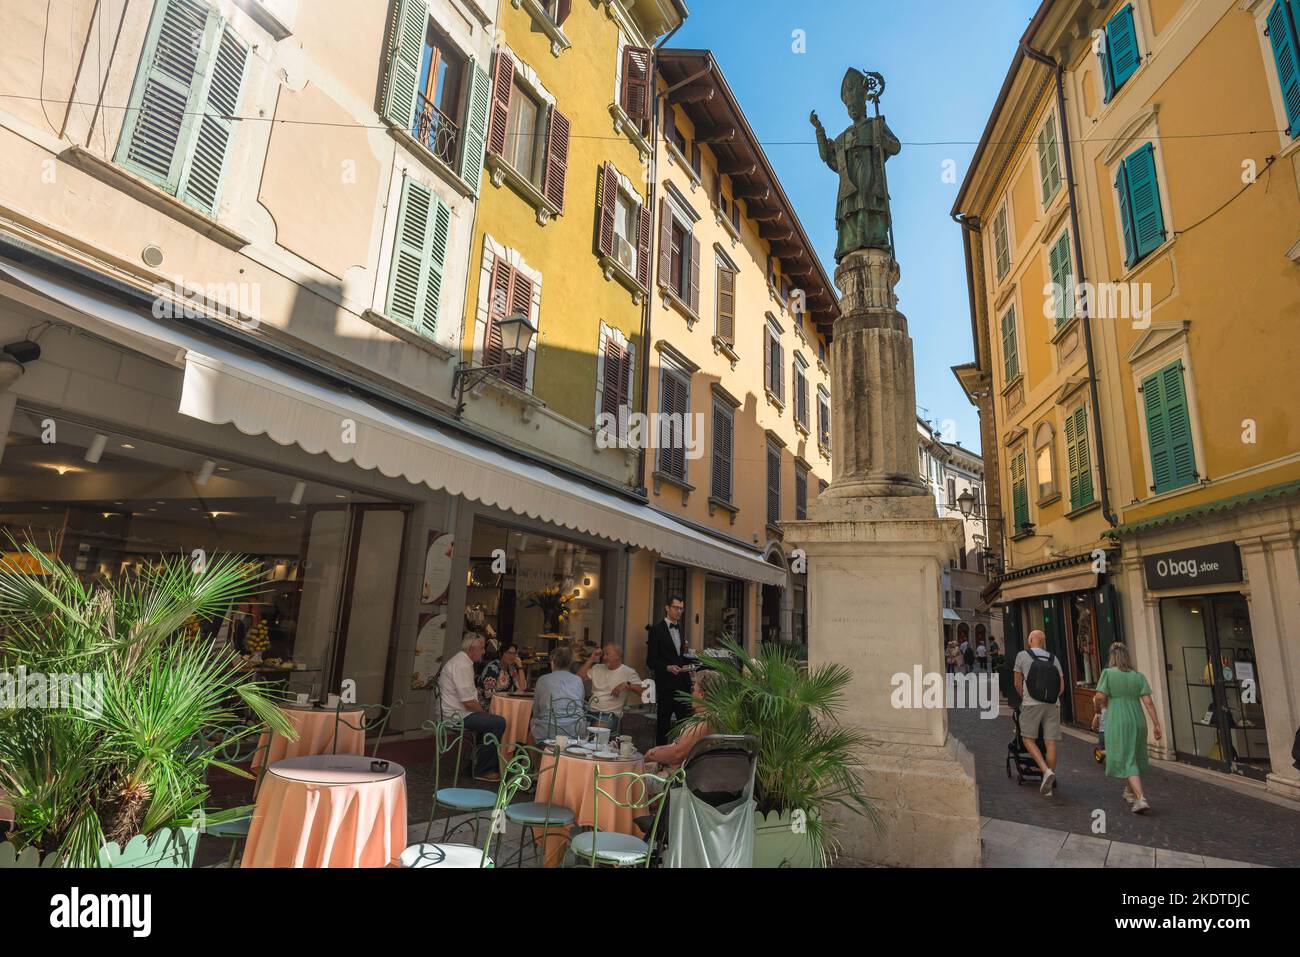 Sala Italia, vista en verano de una cafetería en Via San Carlo en el centro de la pintoresca ciudad de Salo en el Lago Garda, Lombardía, Italia Foto de stock